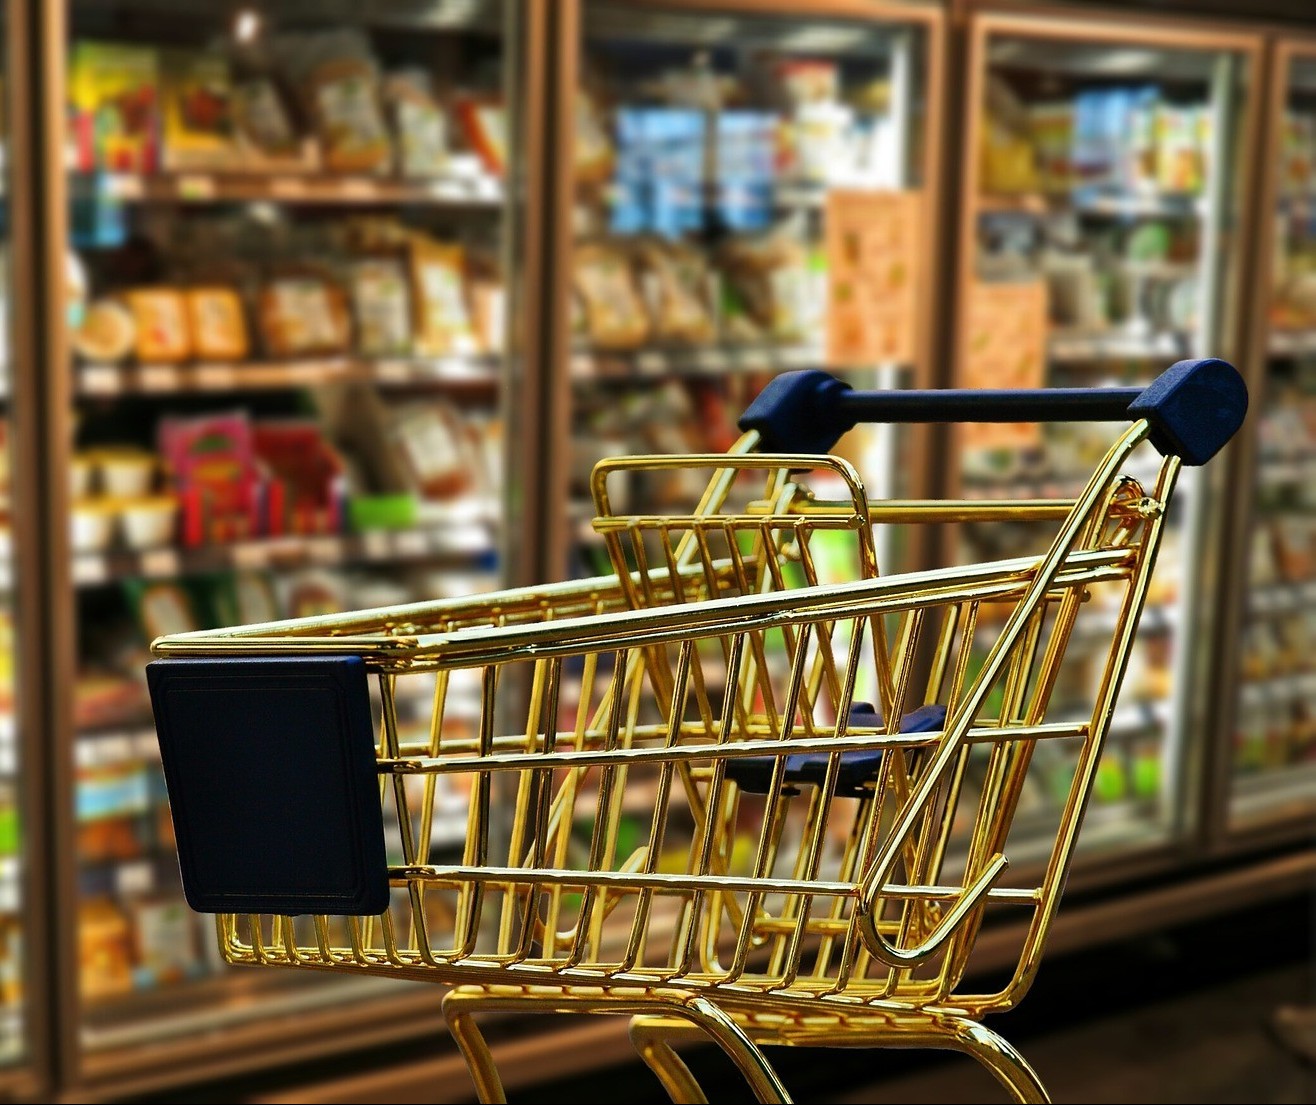 Projeto aprovado pelos vereadores determina informações em braile em supermercados